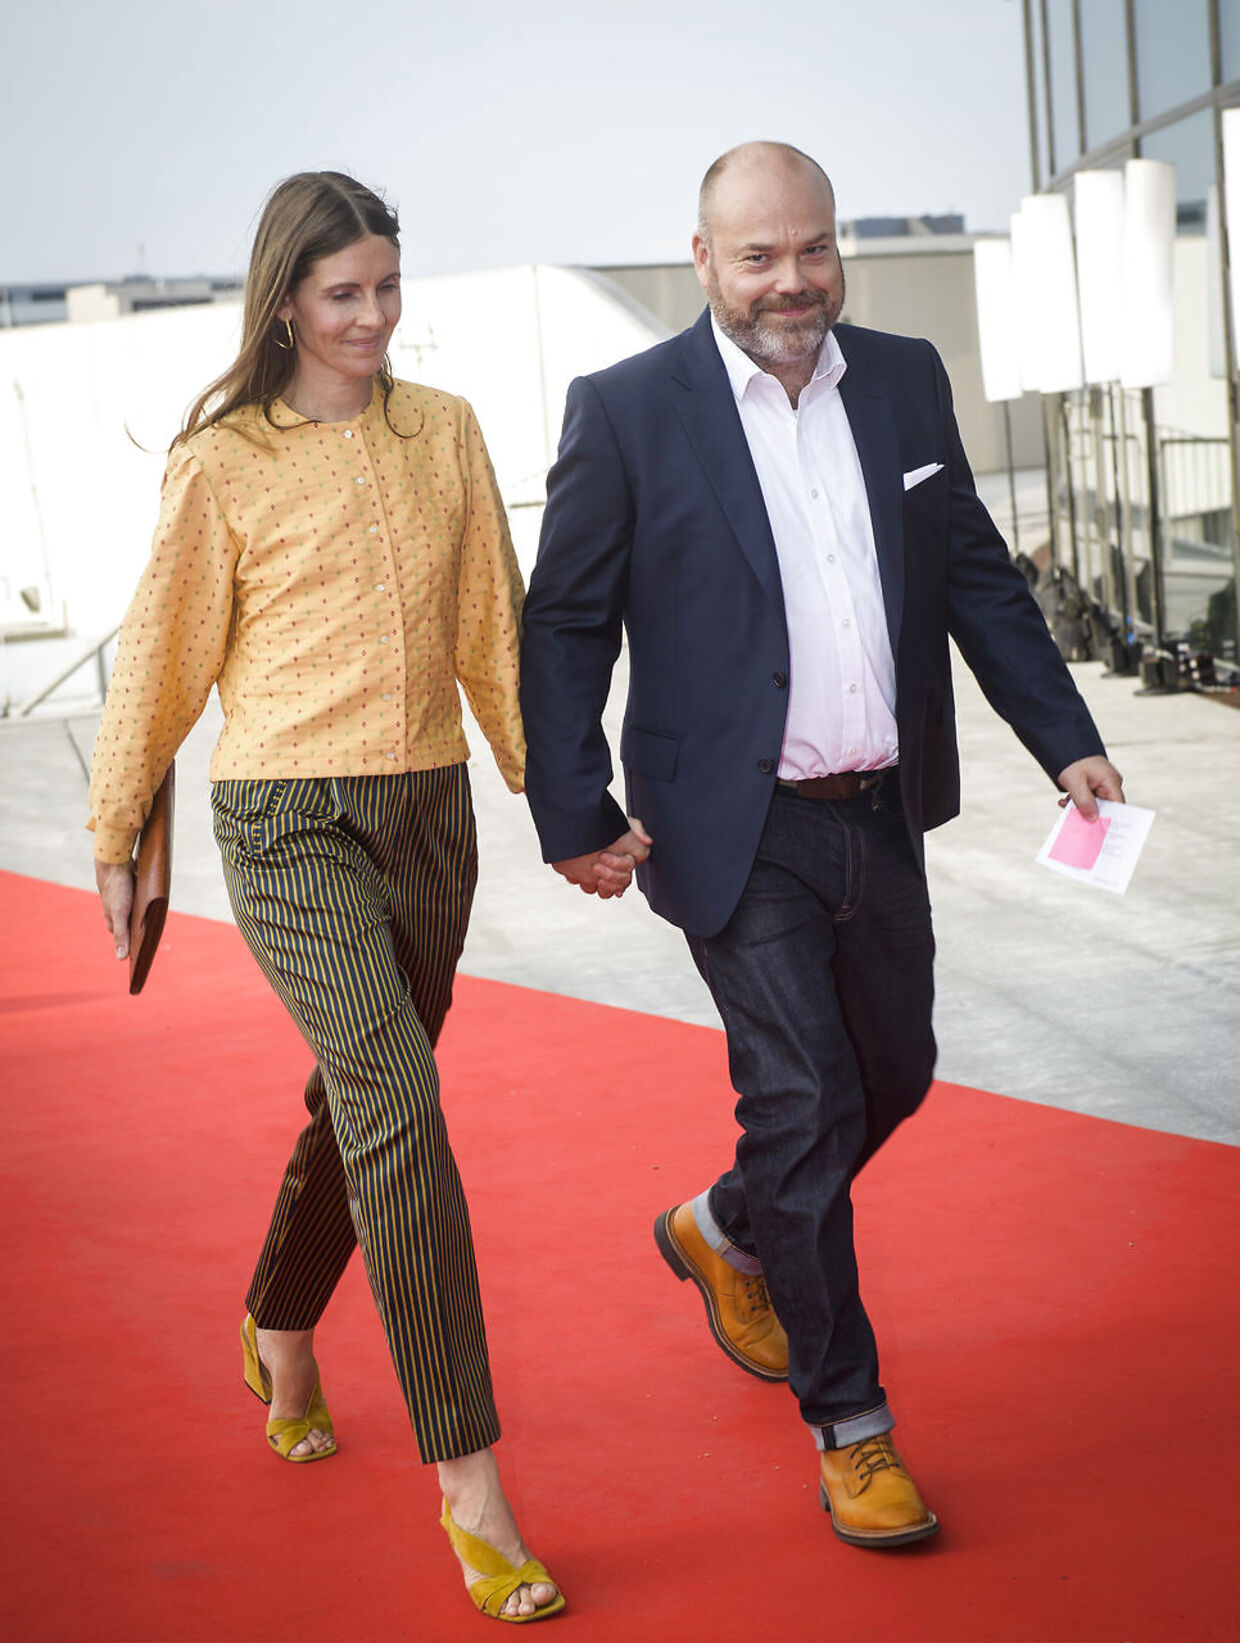 Anders Holch Povlsen og hustru Anne Holch Povlsen ankommer til Kronprins Frederiks 50 års fødselsdag i Royal Arena i København.